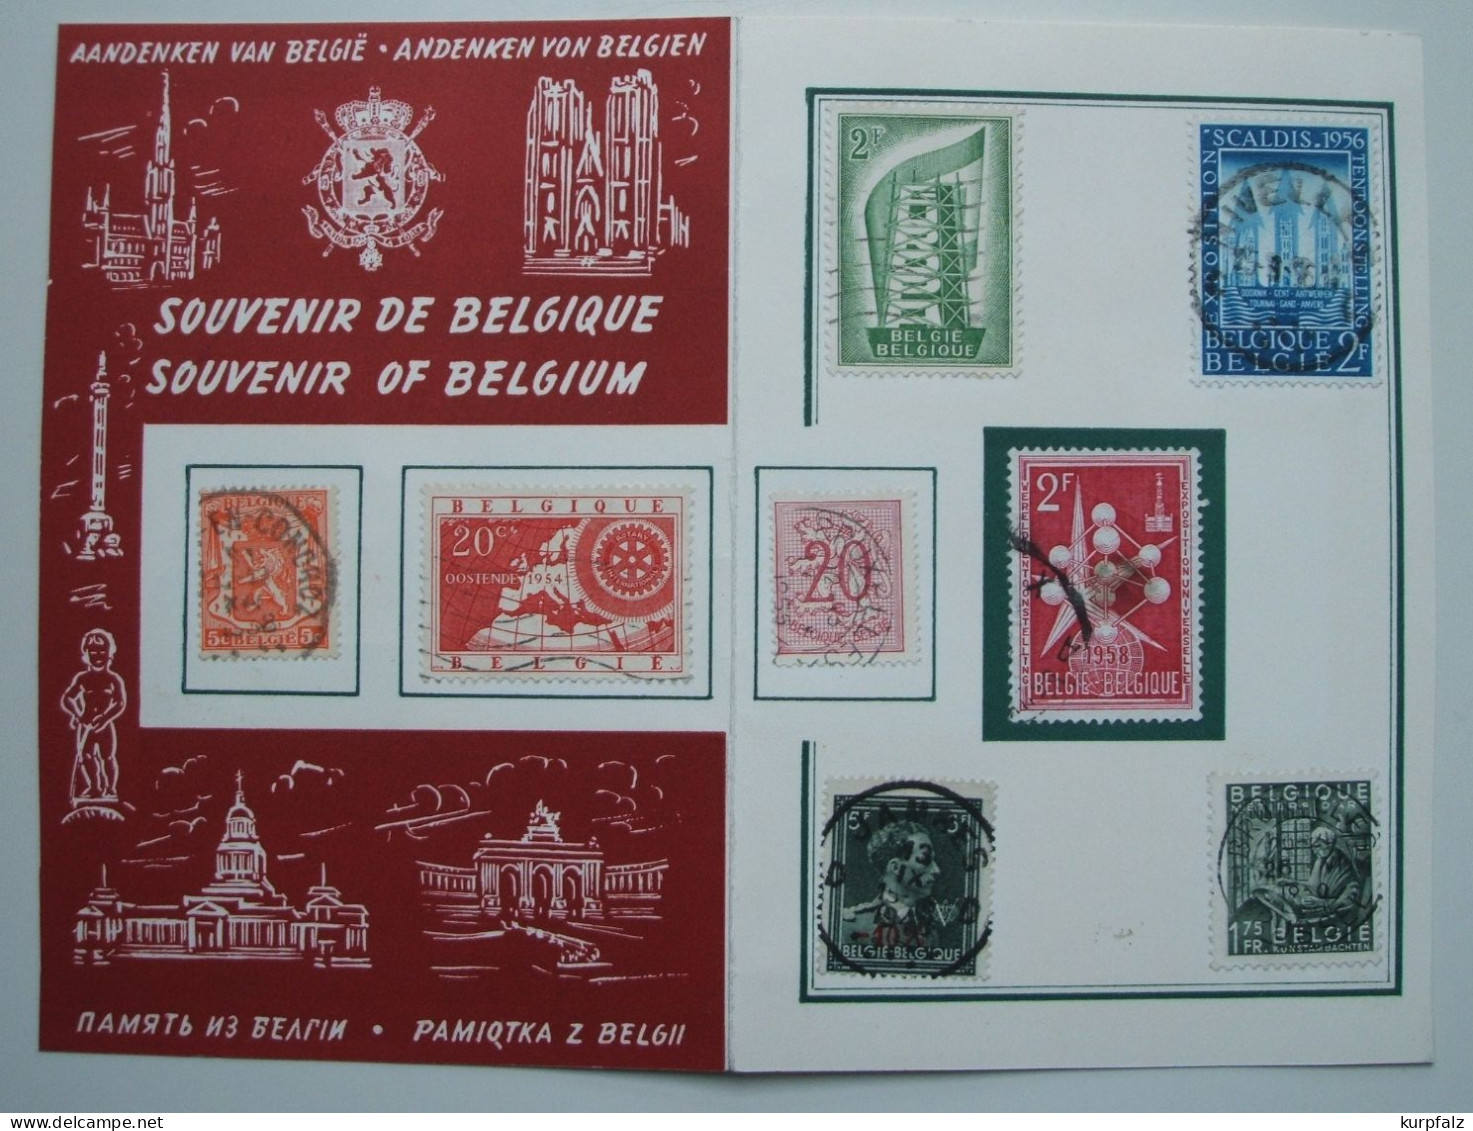 Belgien, Belgique - unsortiertes Briefmarken-Konvolut auf Blättern + Steckseite